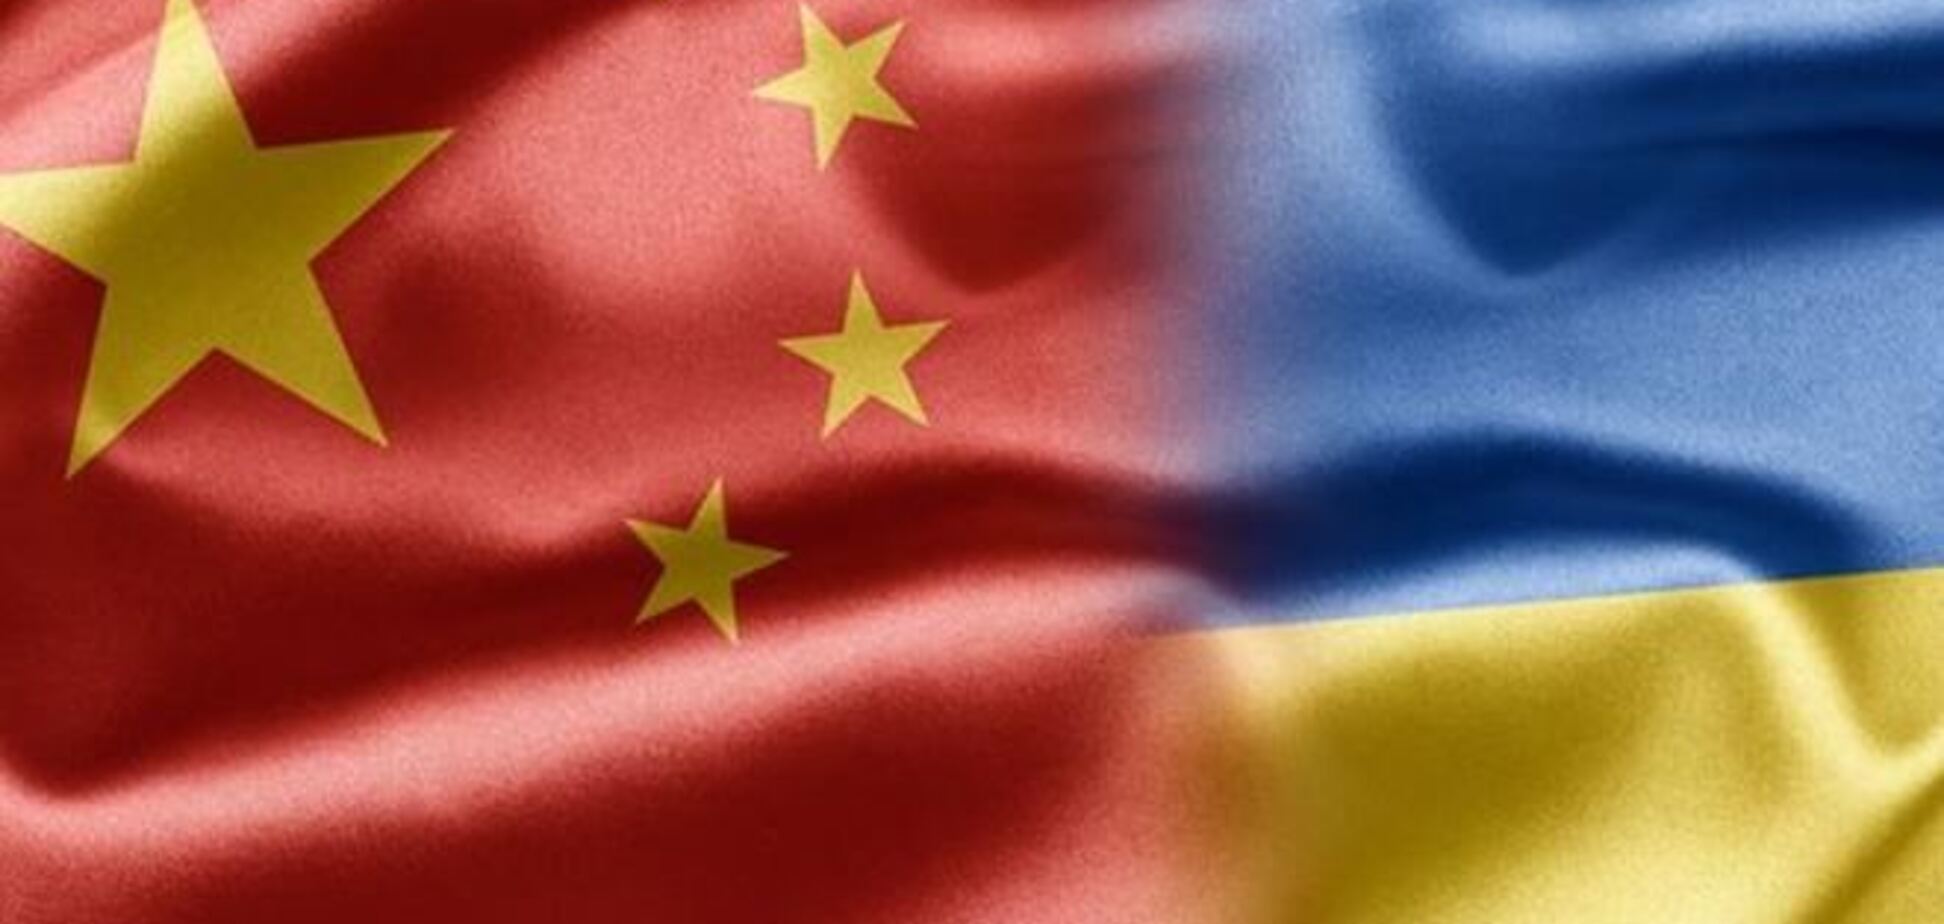 Китай поддерживает целостность и независимость Украины